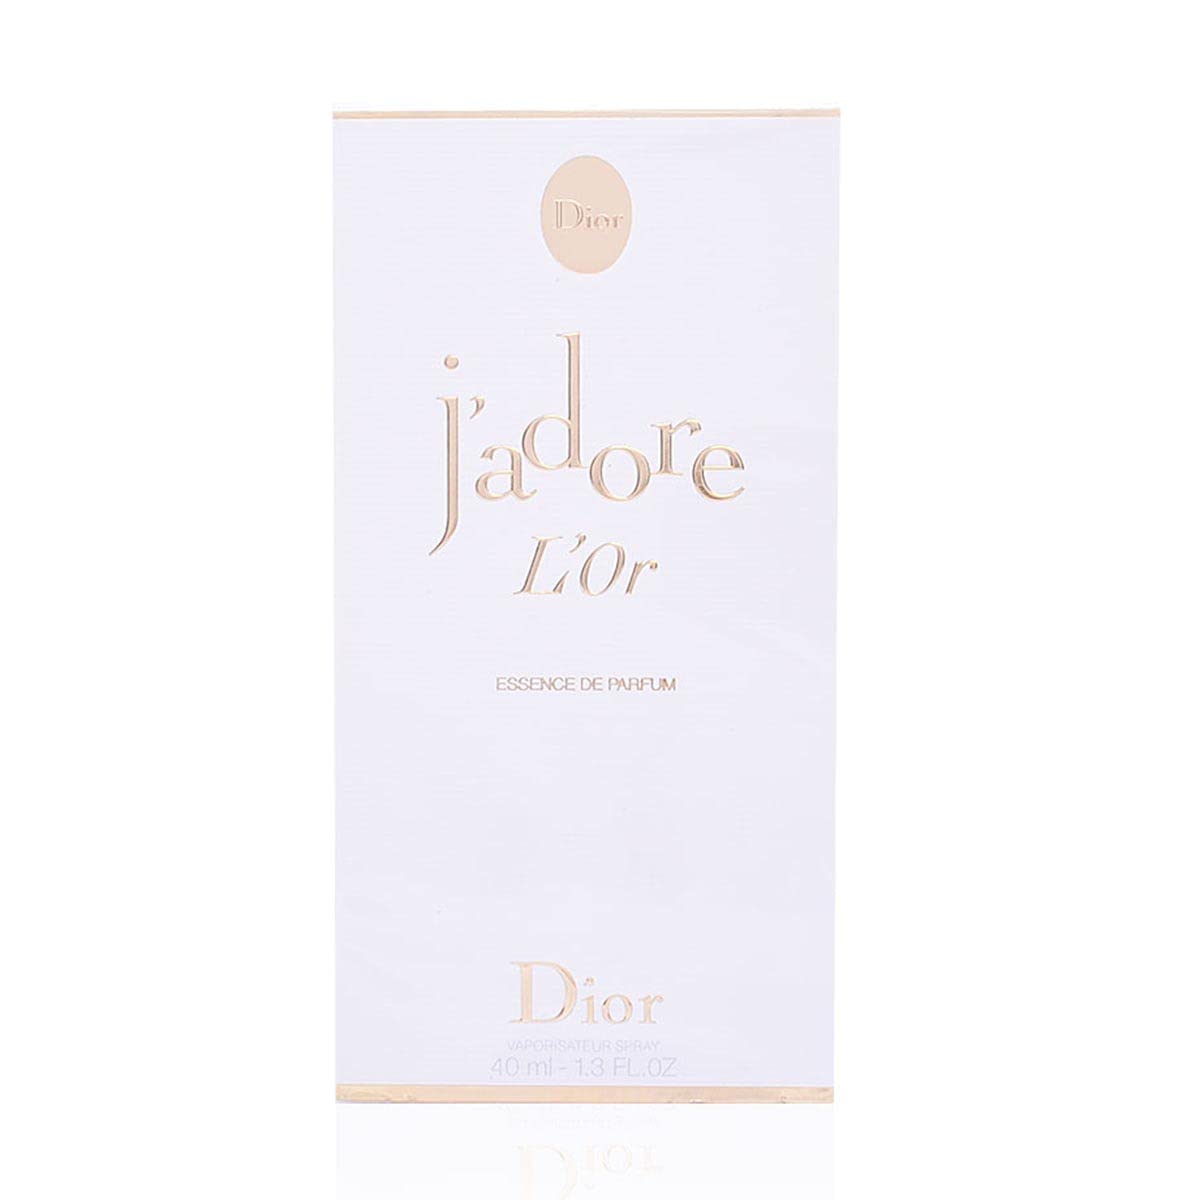 Jadore LOr Dior Essence de Parfum  Tinh chất từ 10000 cánh hoa tươi đắt  tiền nhất thế giới  Nhịp sống kinh tế Việt Nam  Thế giới